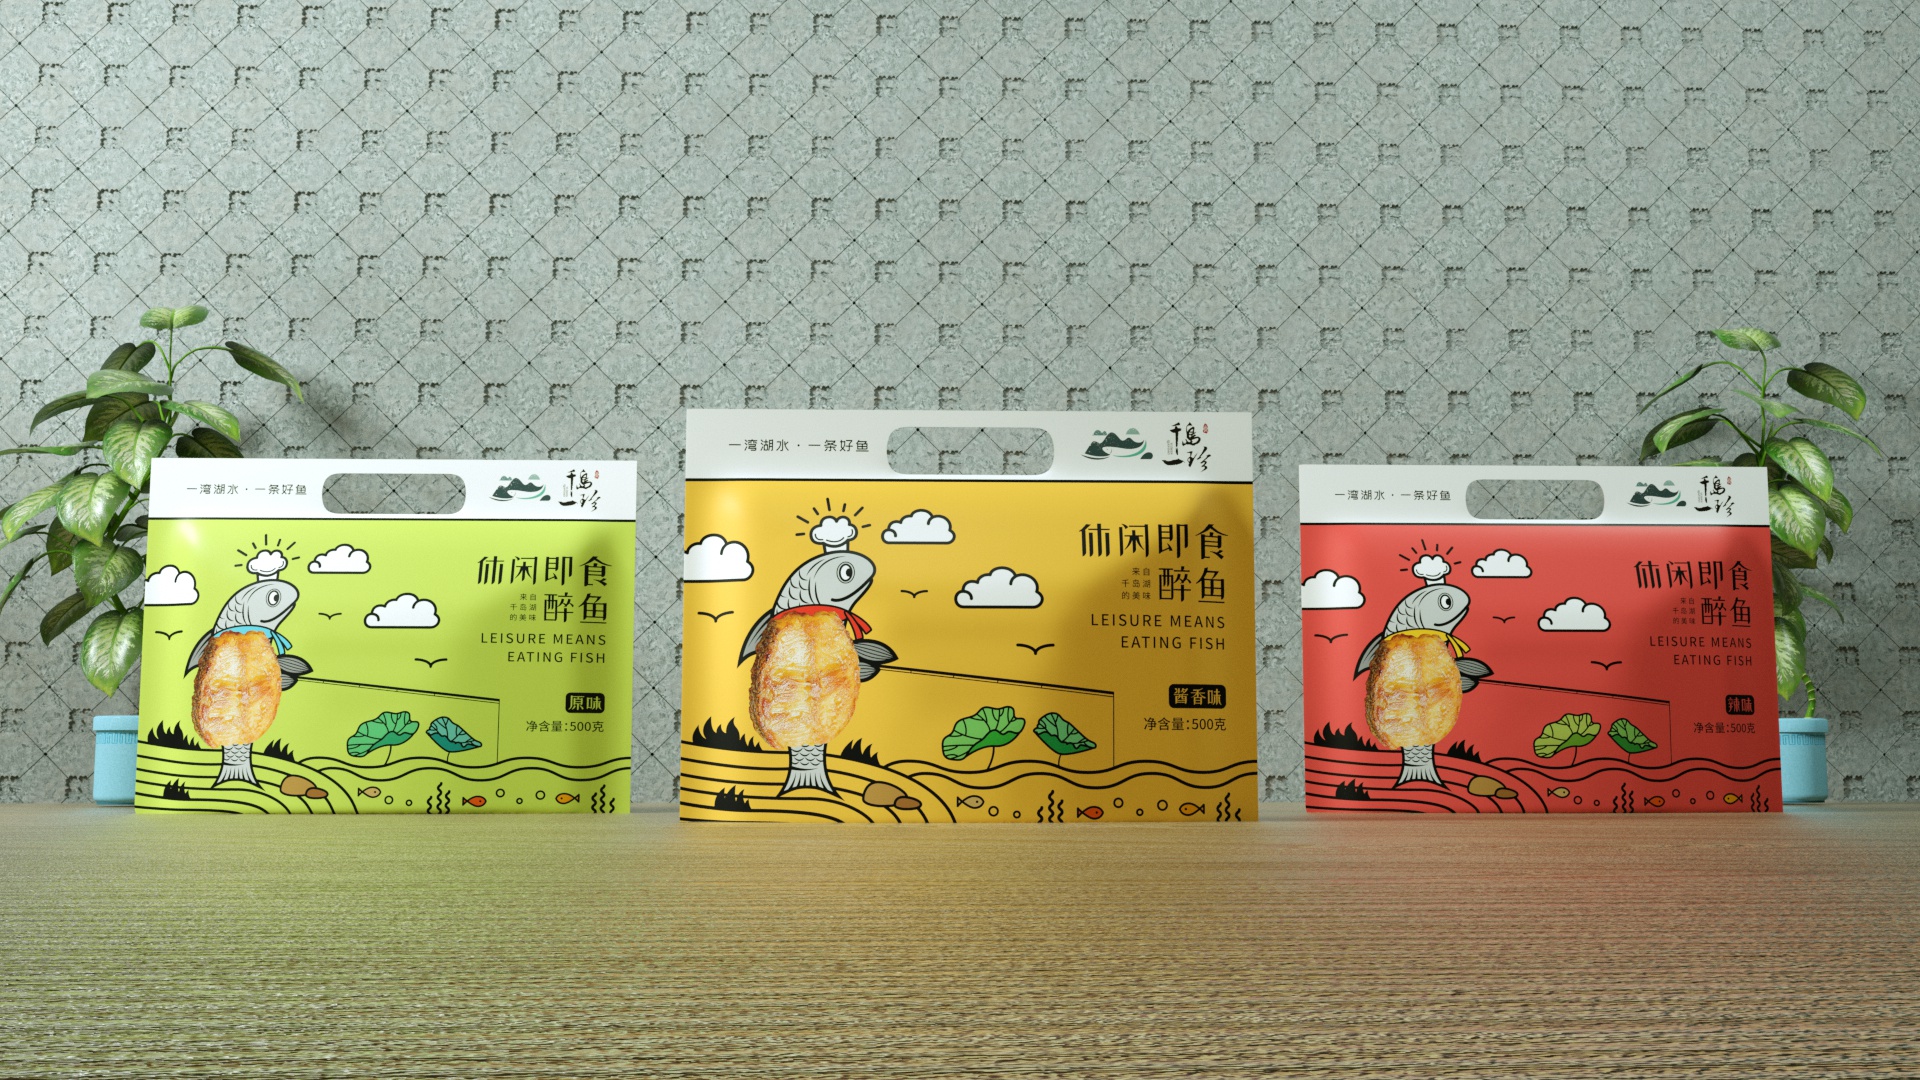 千岛一珍-鱼干食品包装设计 食品包装设计 食品包装设计哪家好 鱼干包装设计公司 第1张